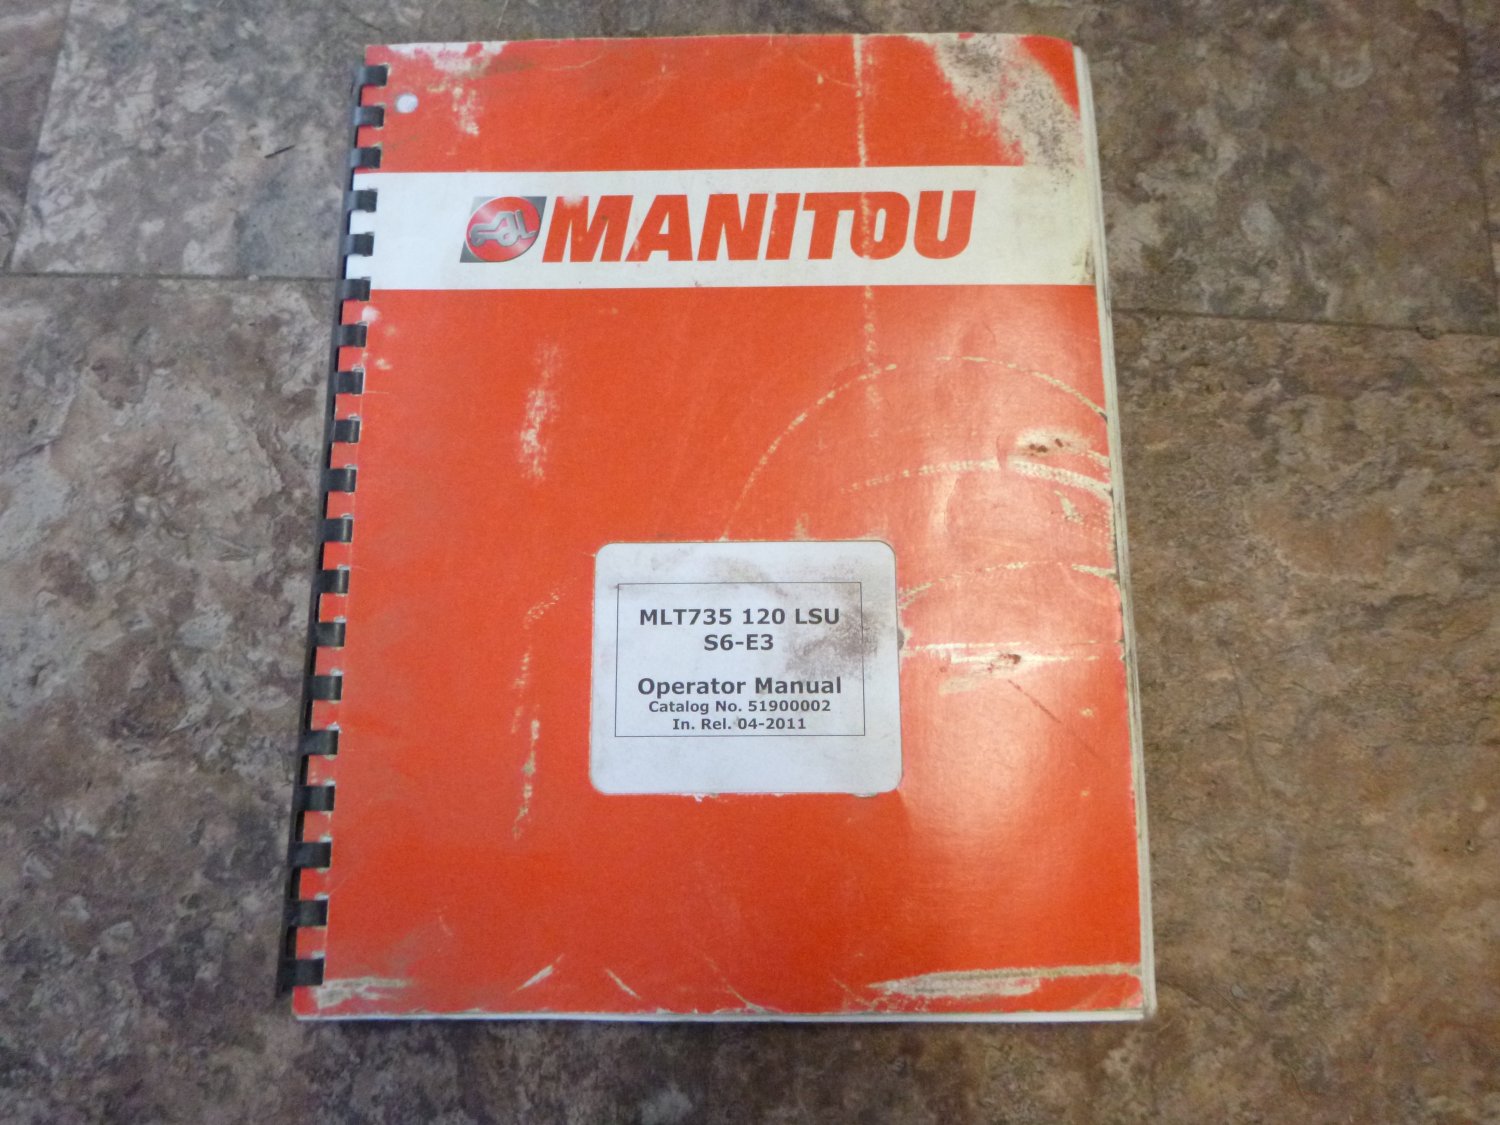 Manitou MLT735 120LSU Operator Manual